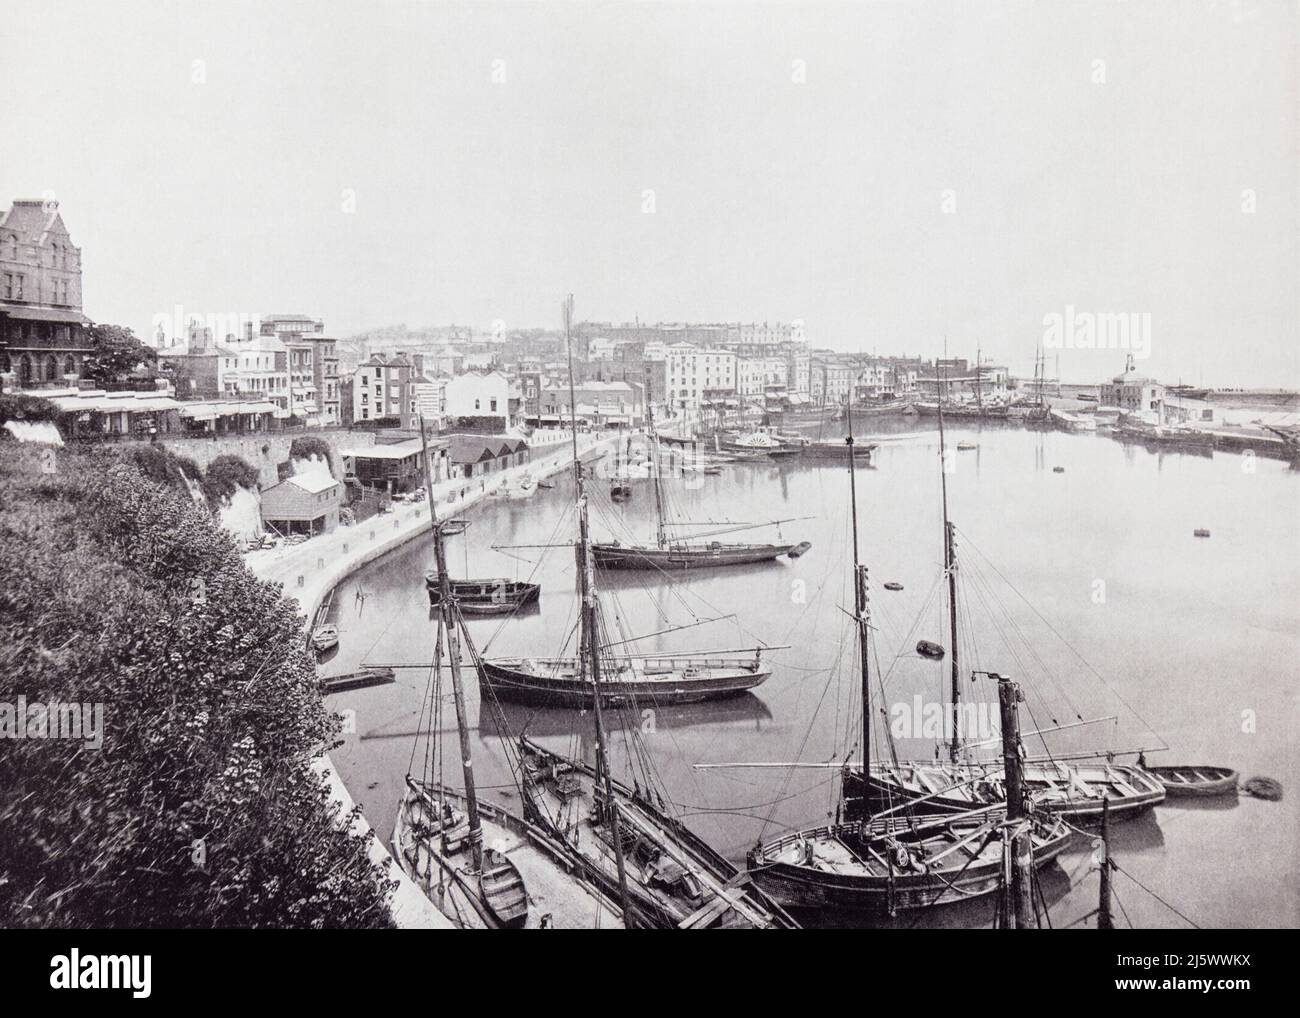 Il porto di Ramsgate, Thanet, Kent, Inghilterra, visto qui nel 19th secolo. Da tutta la costa, un Album di immagini da fotografie dei principali luoghi di interesse del mare in Gran Bretagna e Irlanda pubblicato Londra, 1895, da George Newnes Limited. Foto Stock